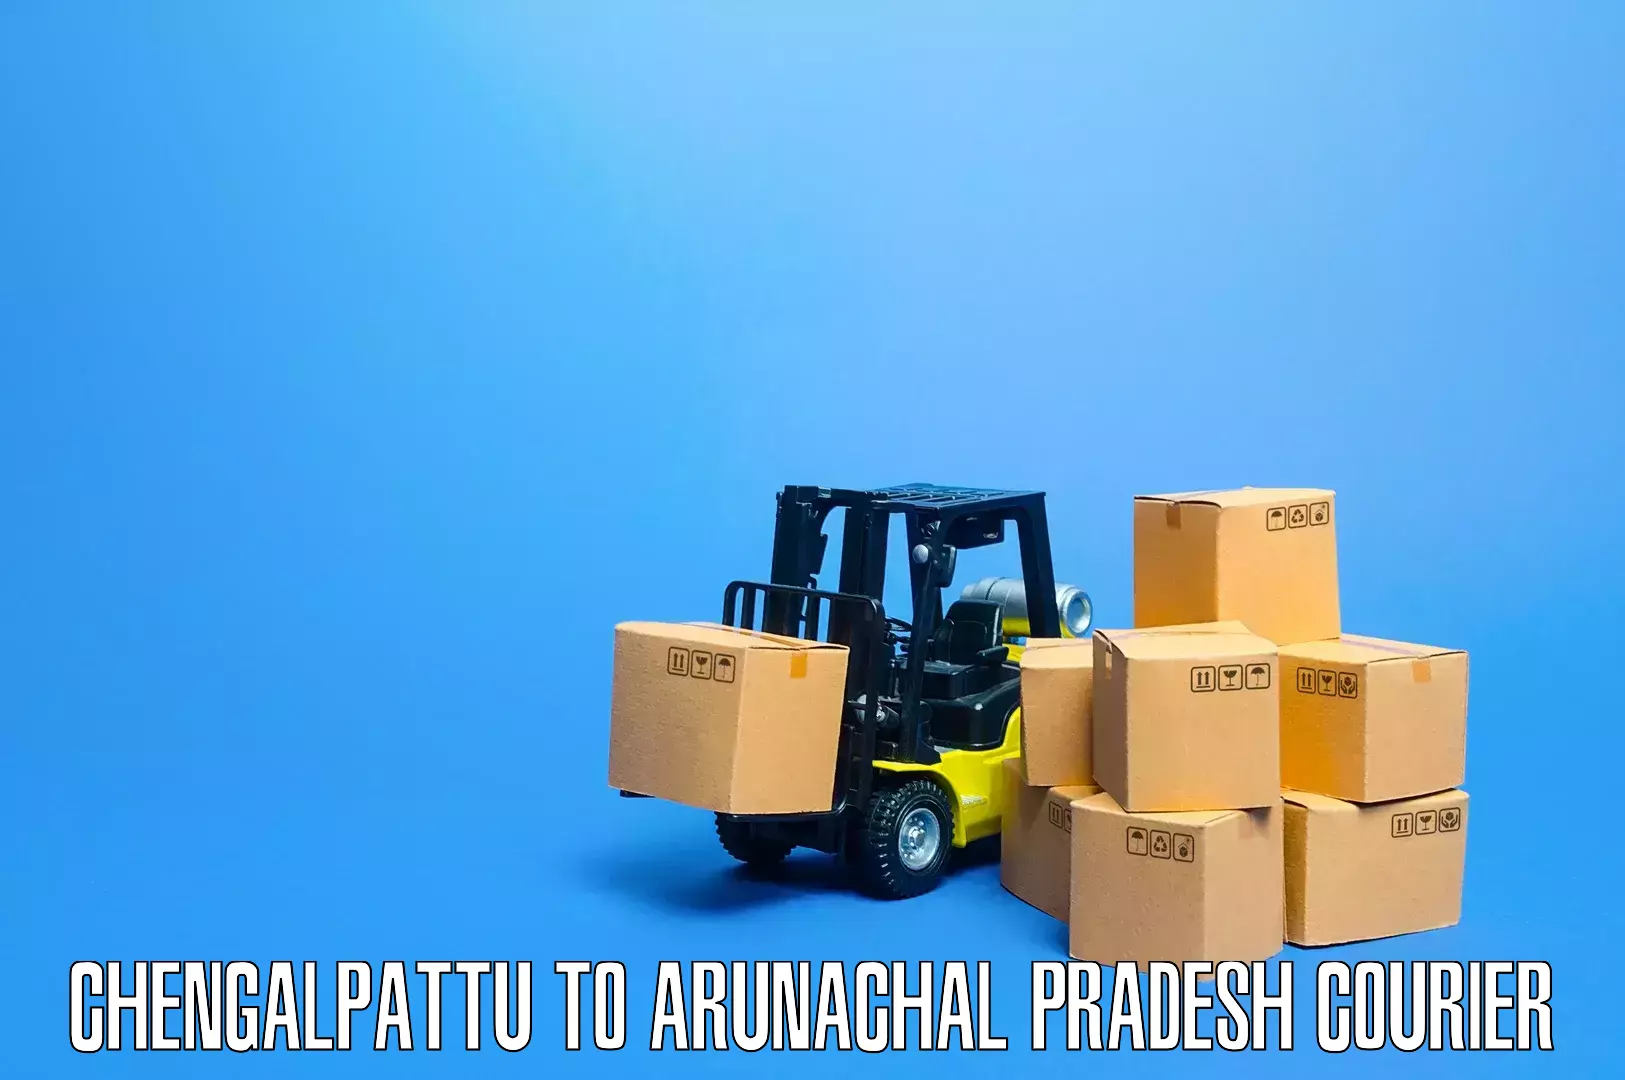 Expert furniture movers Chengalpattu to Arunachal Pradesh